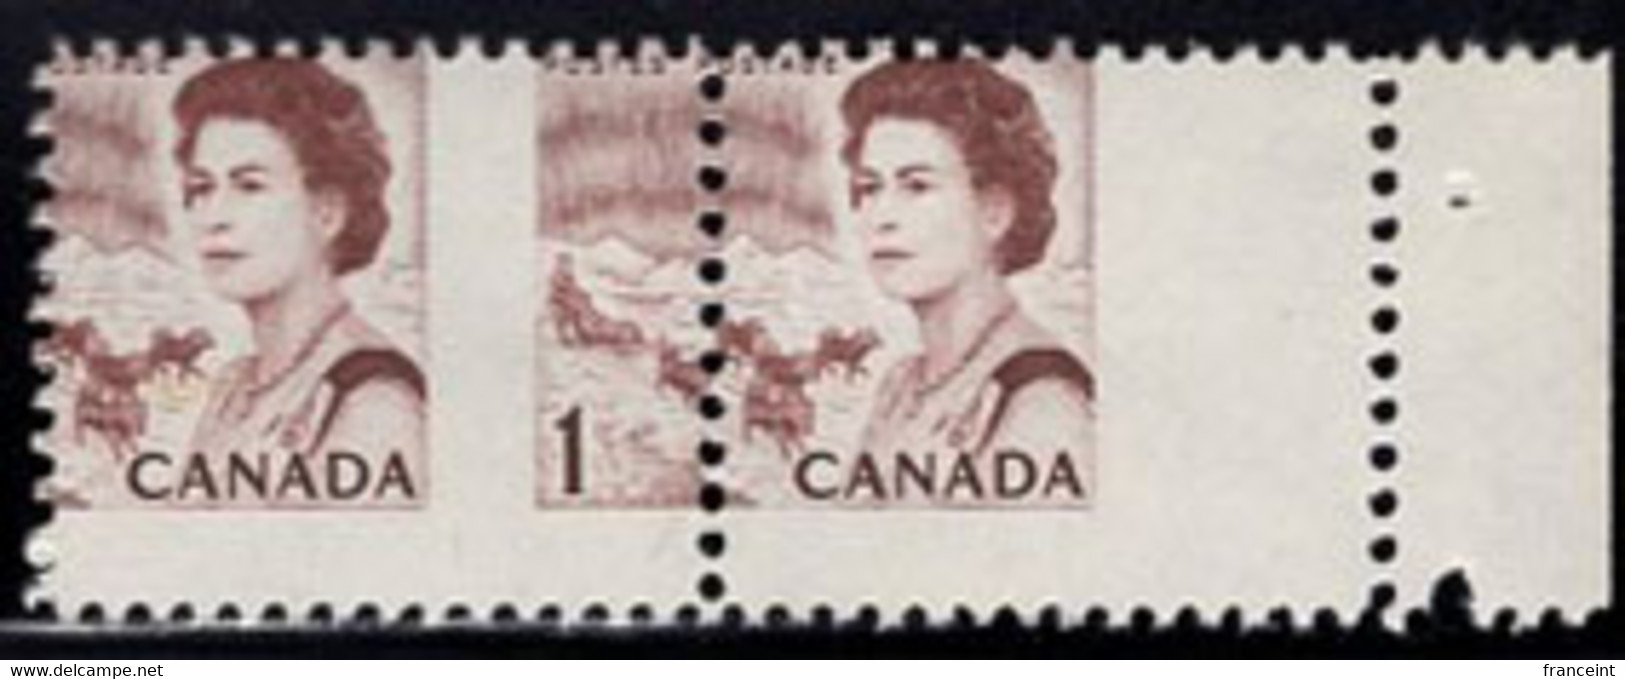 CANADA(1967) Arctic Scene. Aurora Borealis. QE II. Vertical Misperforation In Pair. Scott No 454. - Variedades Y Curiosidades